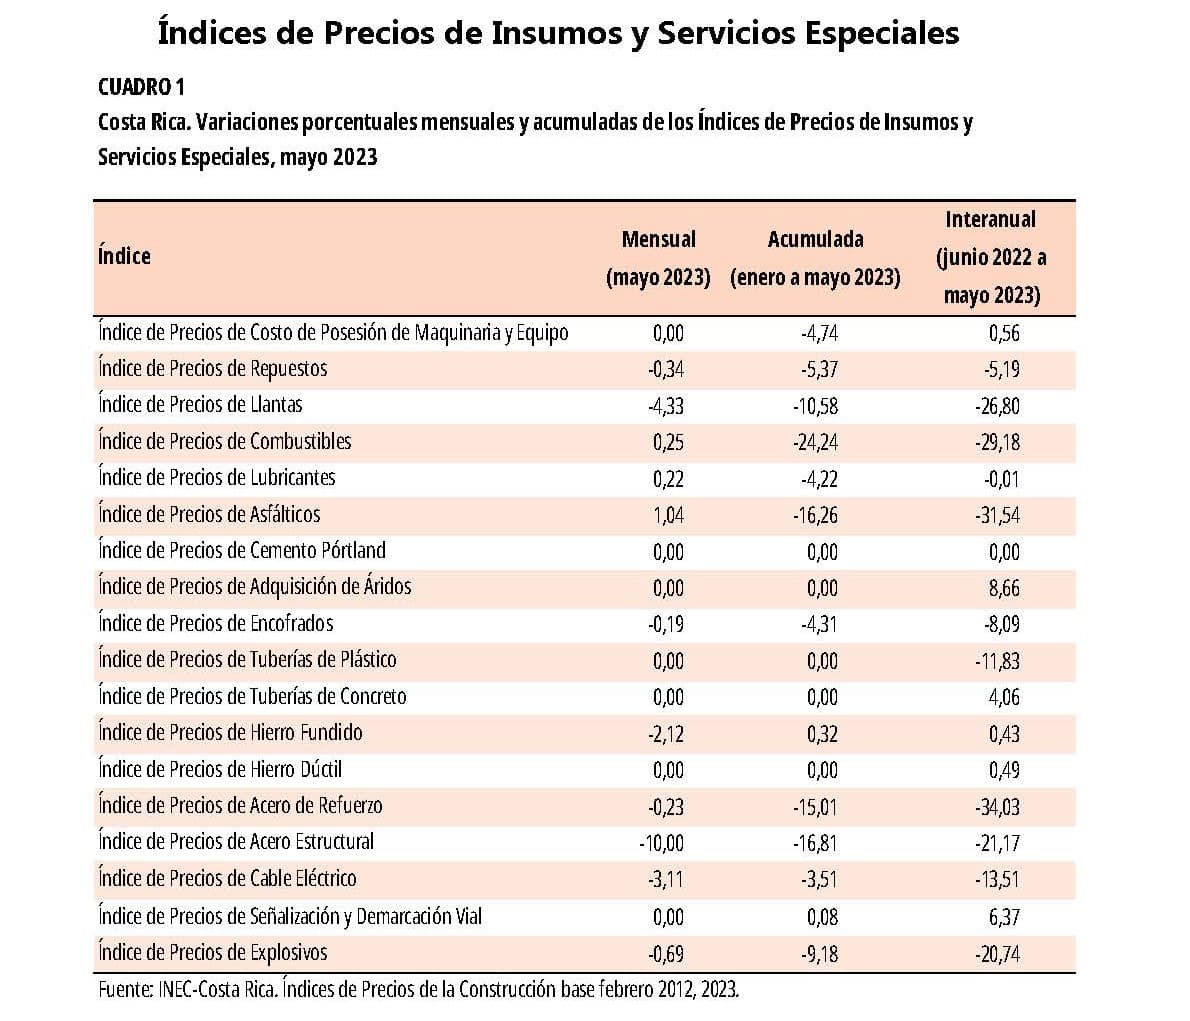 CUADRO 1. Costa Rica. Variaciones porcentuales mensuales y acumuladas de los Índices de Precios de Insumos y Servicios Especiales, mayo 2023.